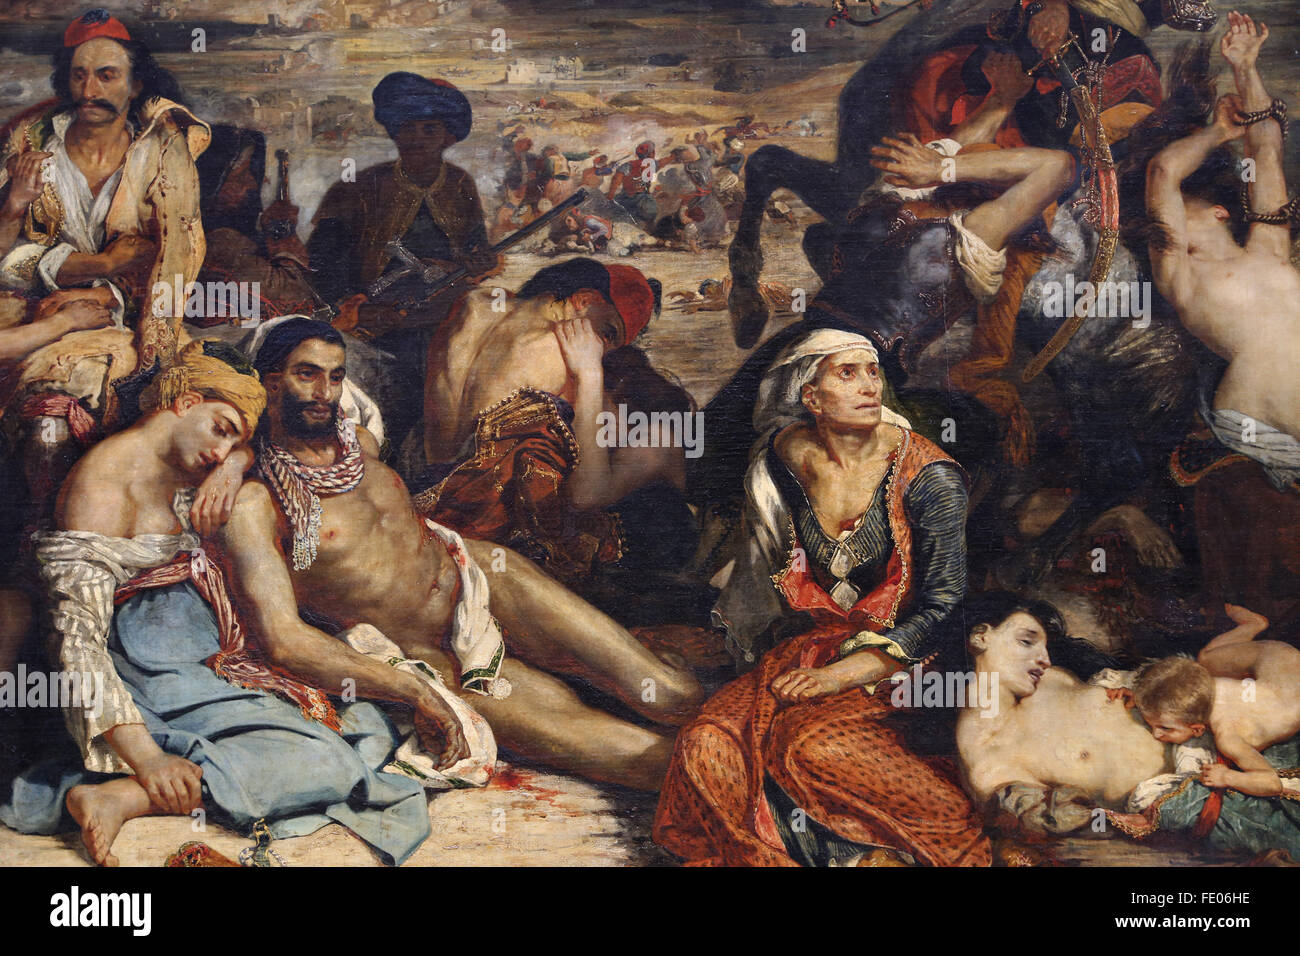 Das Massaker von Chios (11. April 1822), 1824 von dem französischen Maler Eugène Delacroix (1798-1863). Griechischer Krieg von Unabhängigkeit. Stockfoto